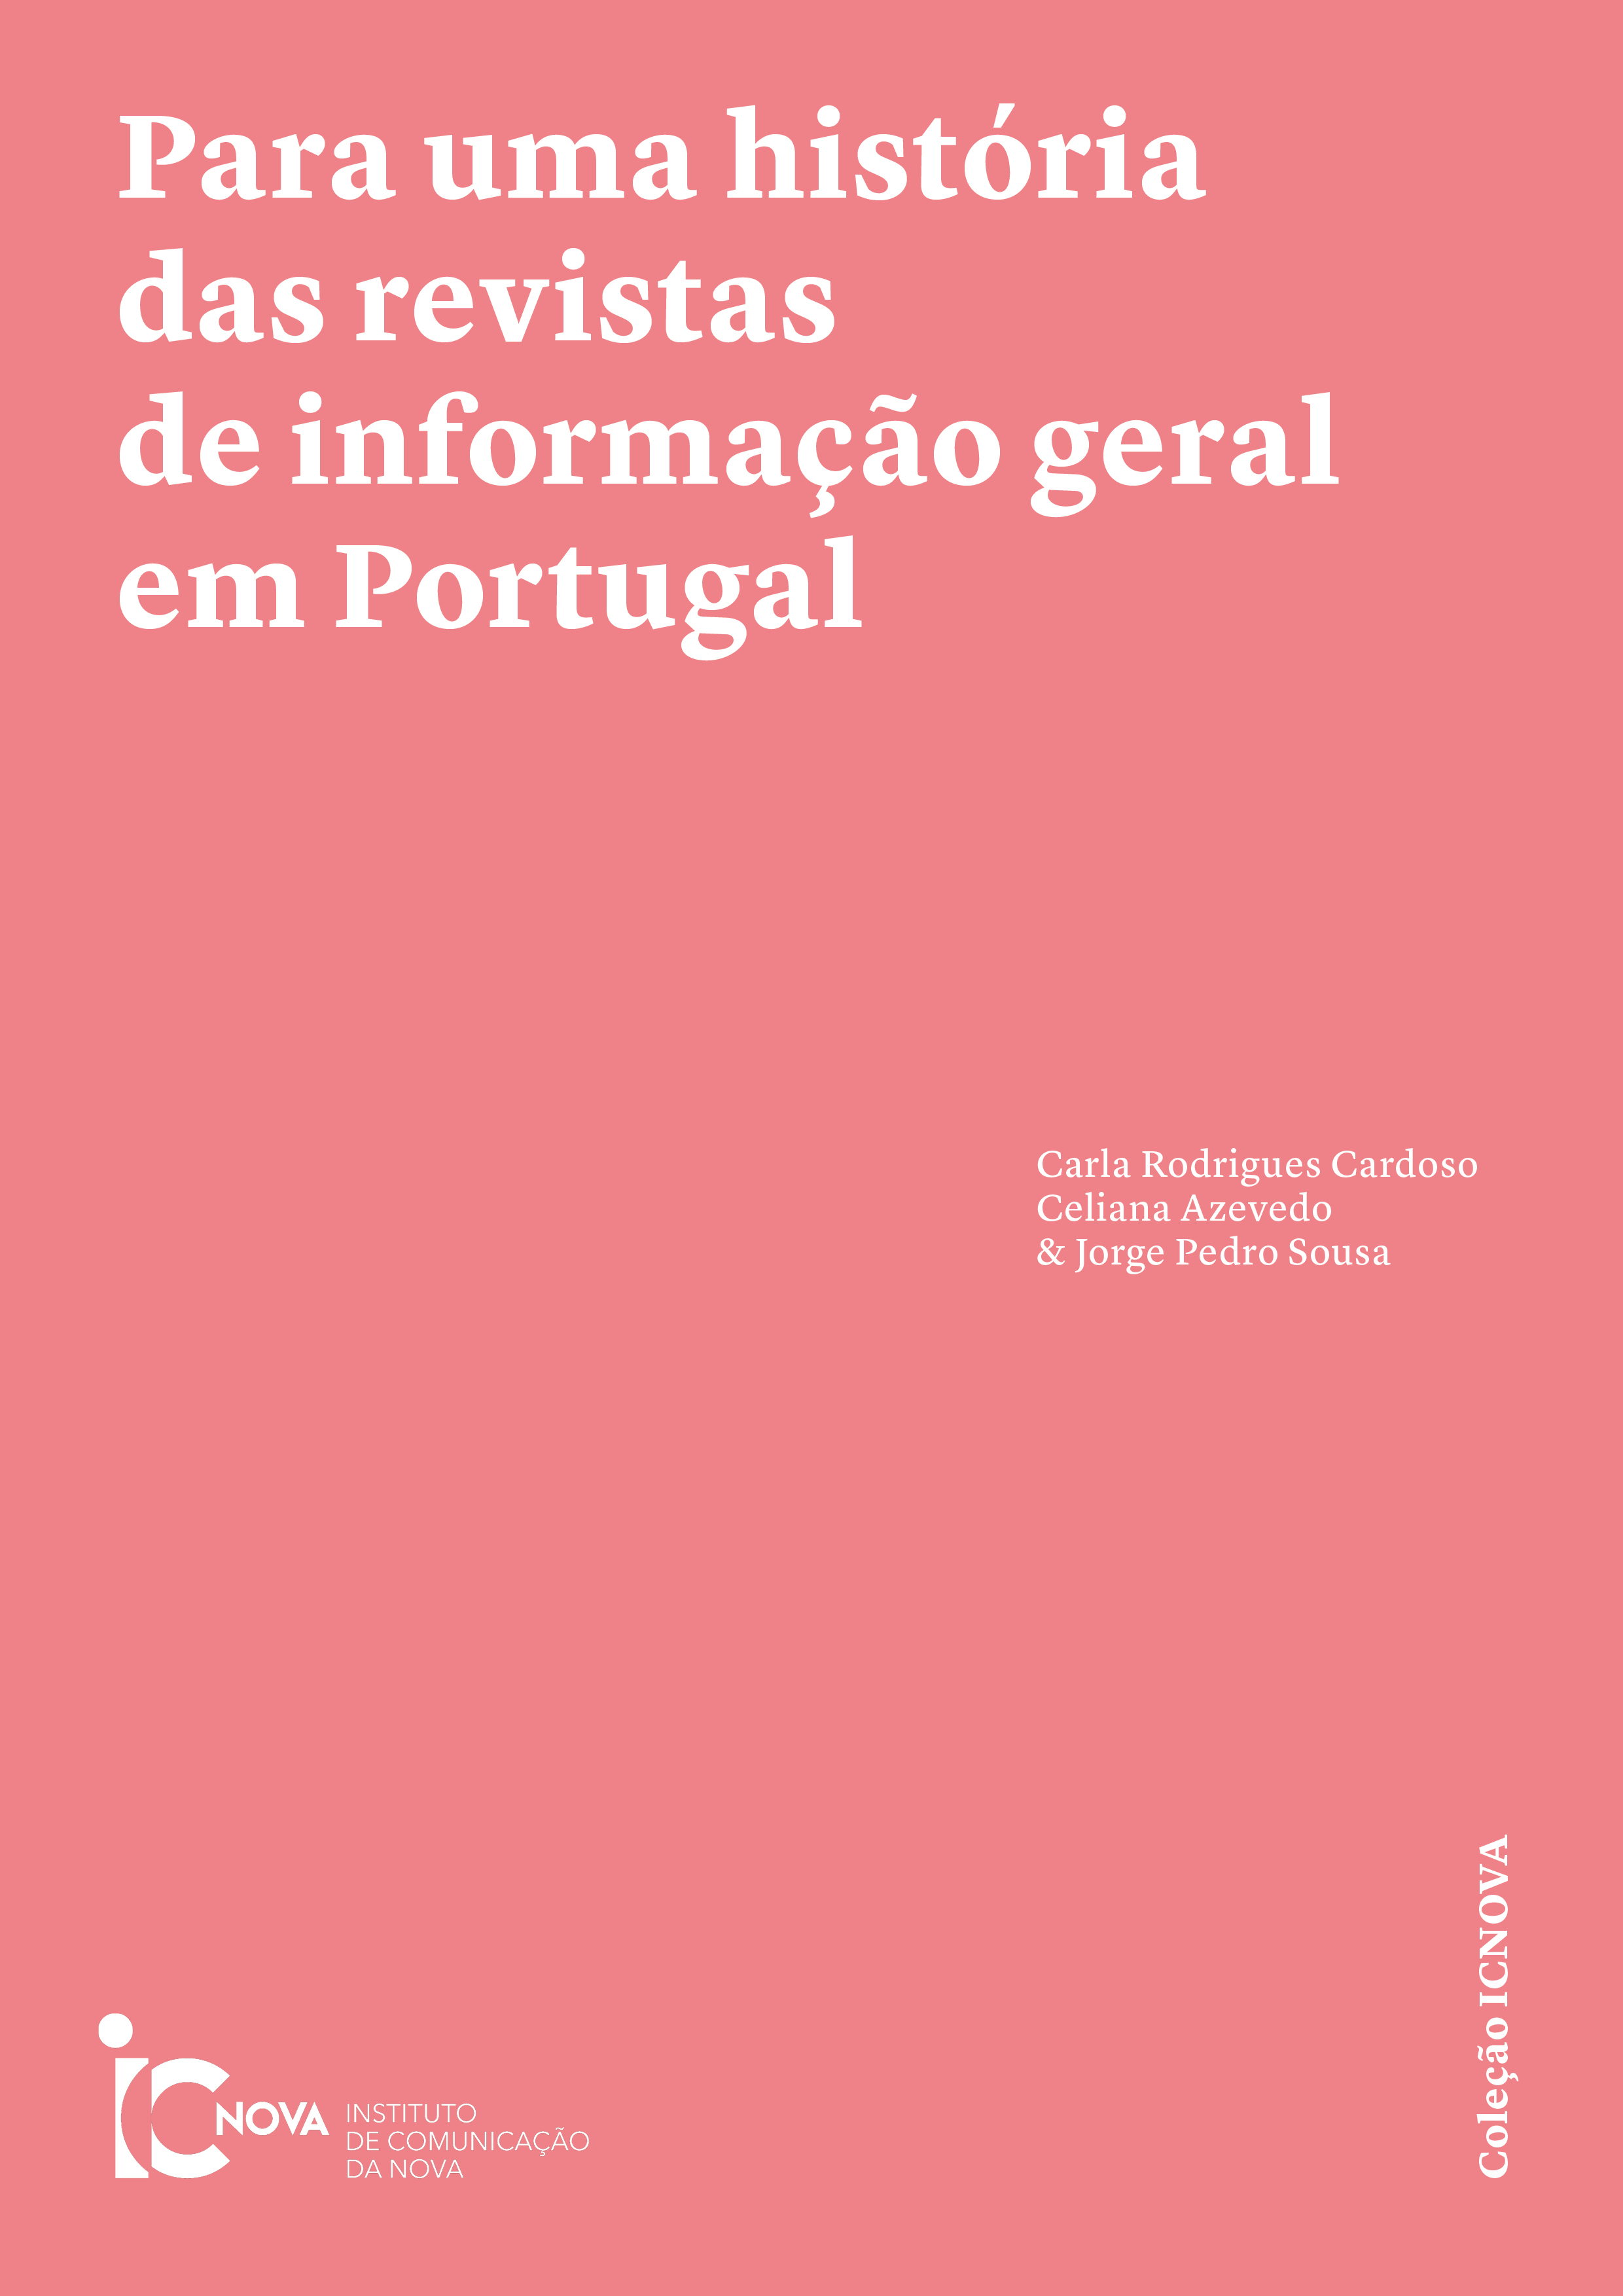 					Ver 2022: Para uma história das revistas de informação geral em Portugal
				